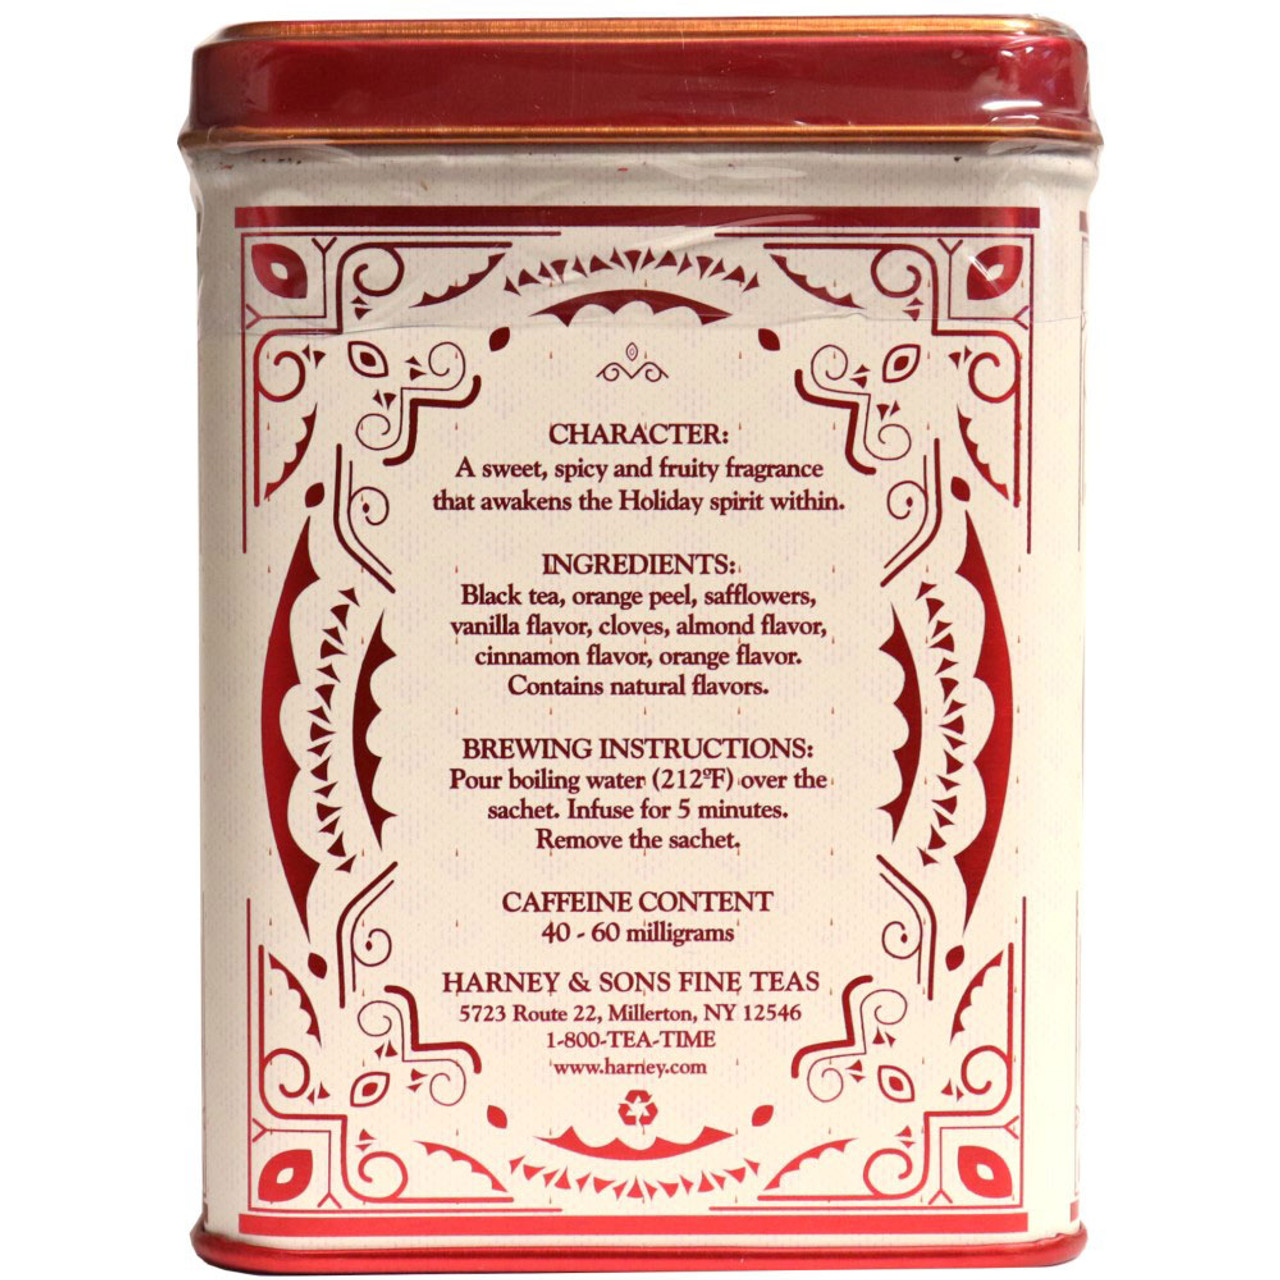 Hot Cinnamon Spice Tea  20 Sachets - Harney & Sons Fine Teas